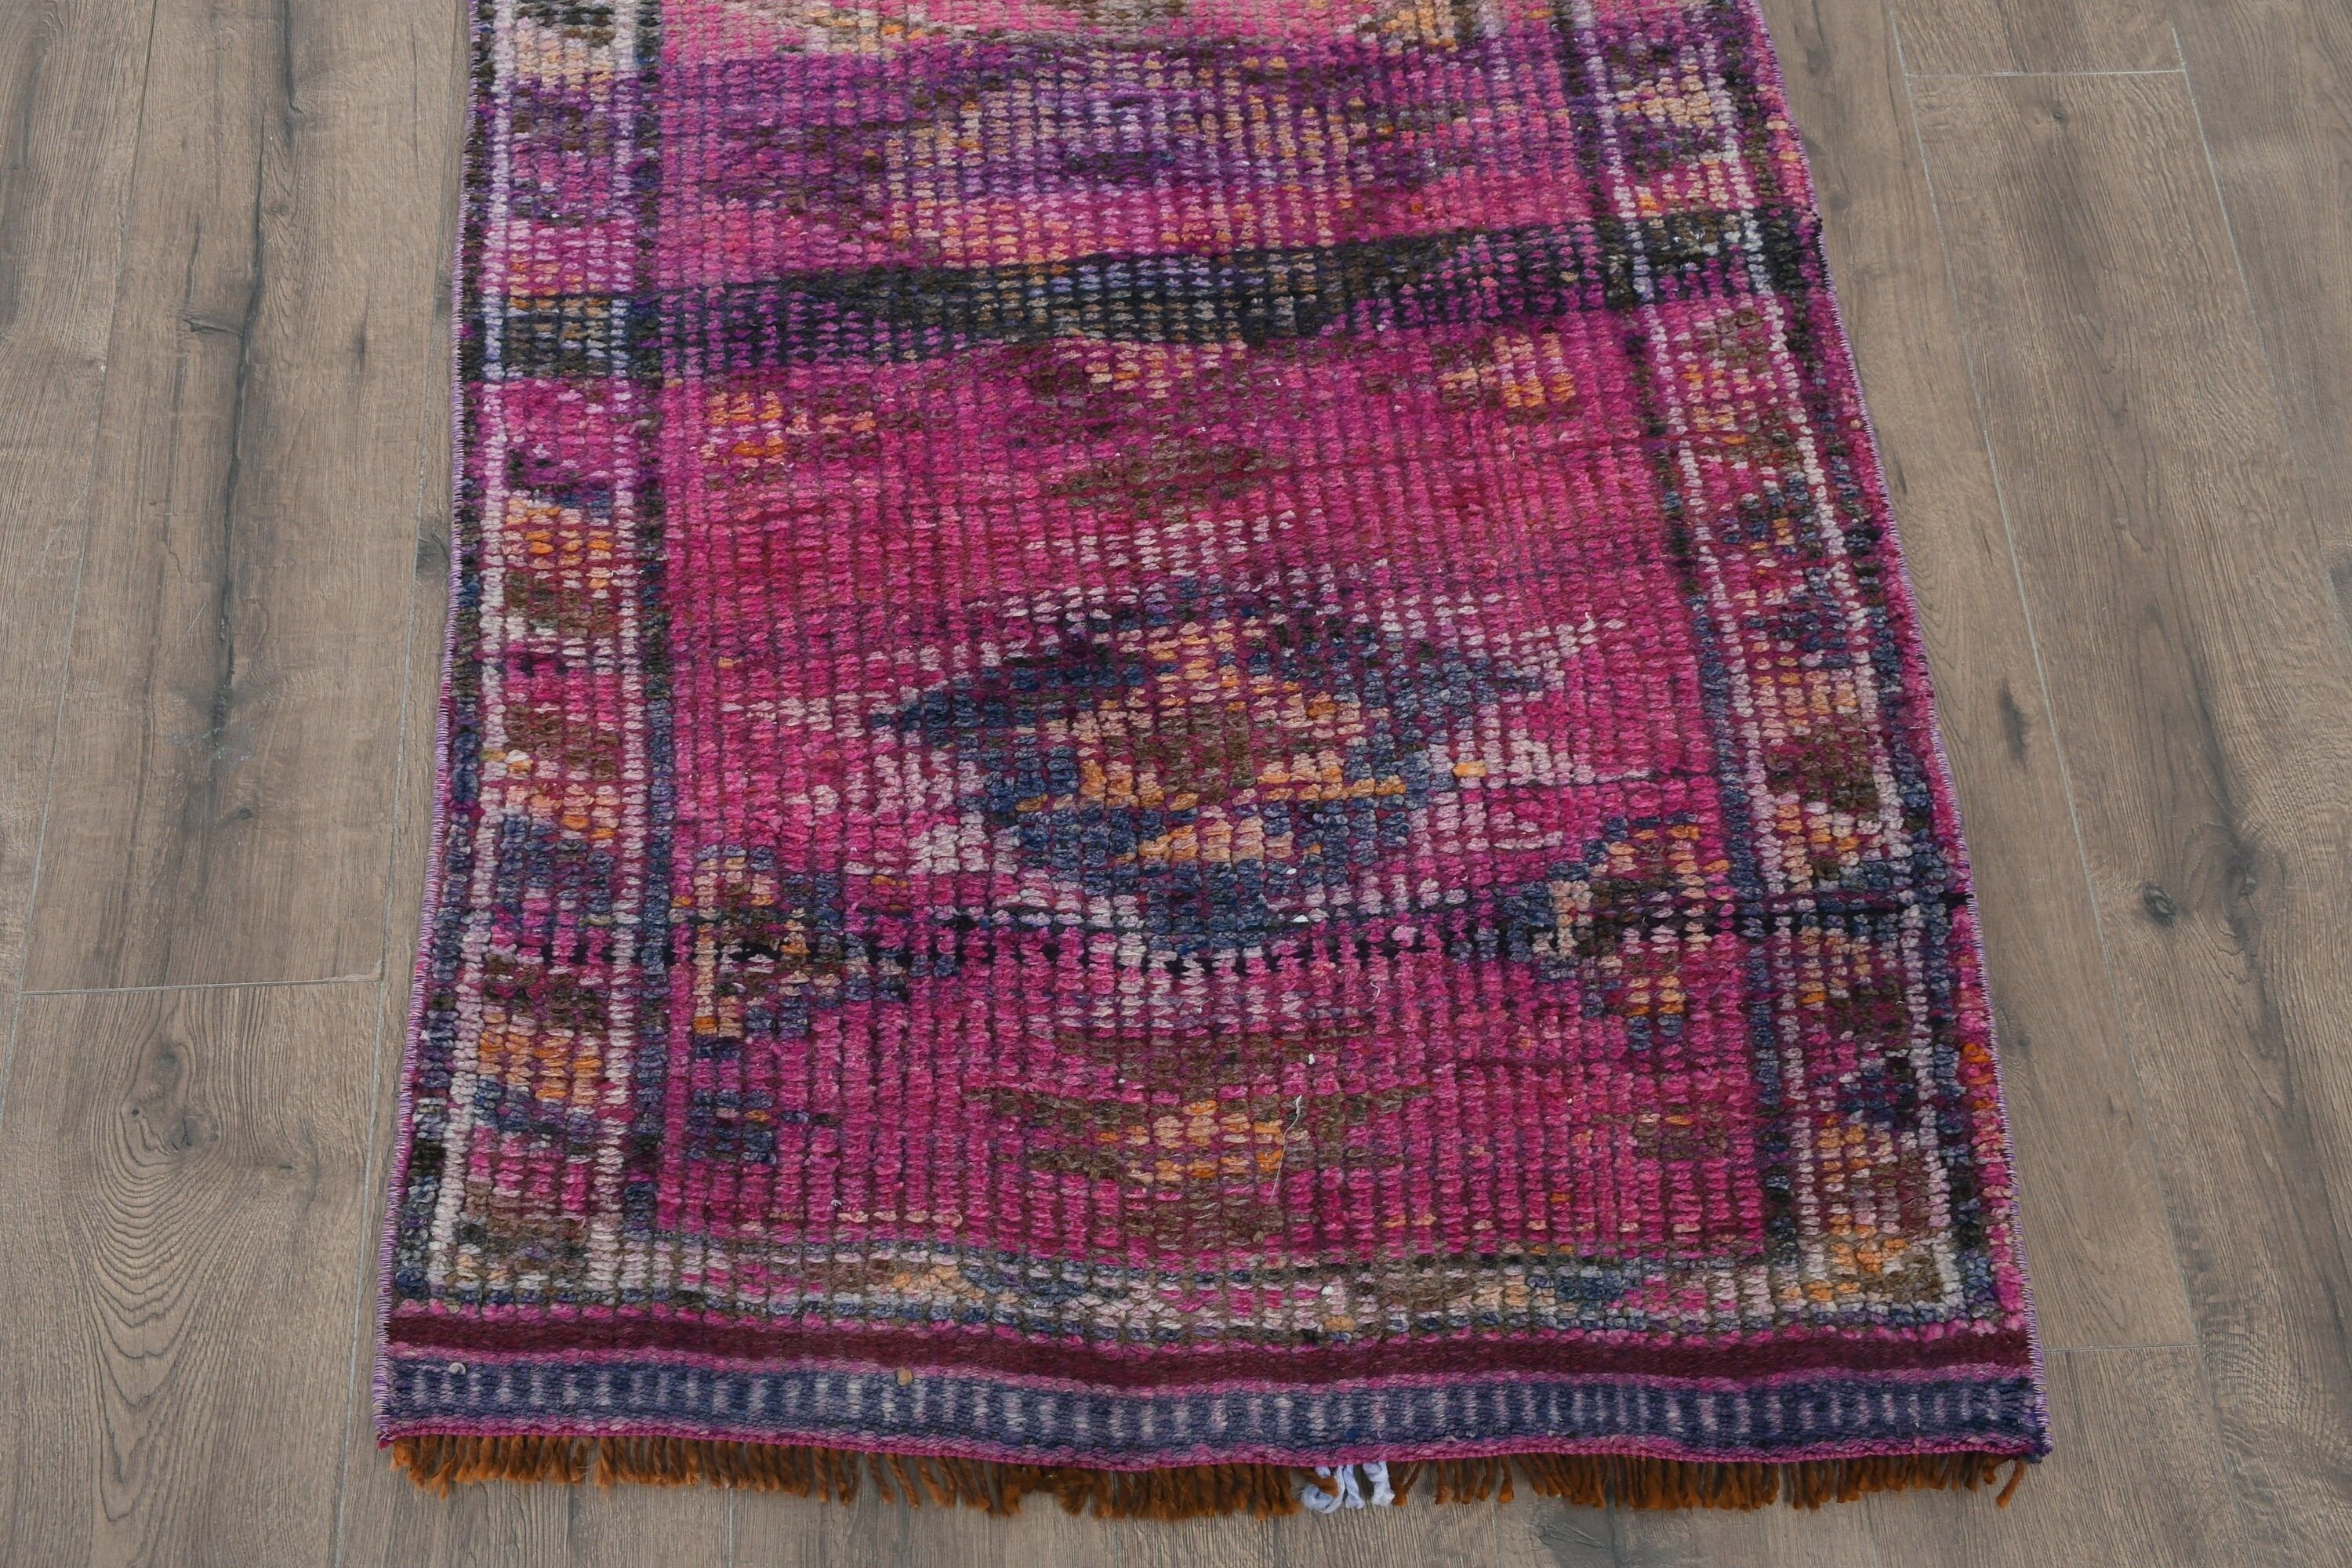 Oushak Rug, Wool Rug, Vintage Rugs, Rugs for Hallway, Turkish Rugs, Corridor Rug, 2.8x10.2 ft Runner Rug, Pink Bedroom Rugs, Hallway Rug